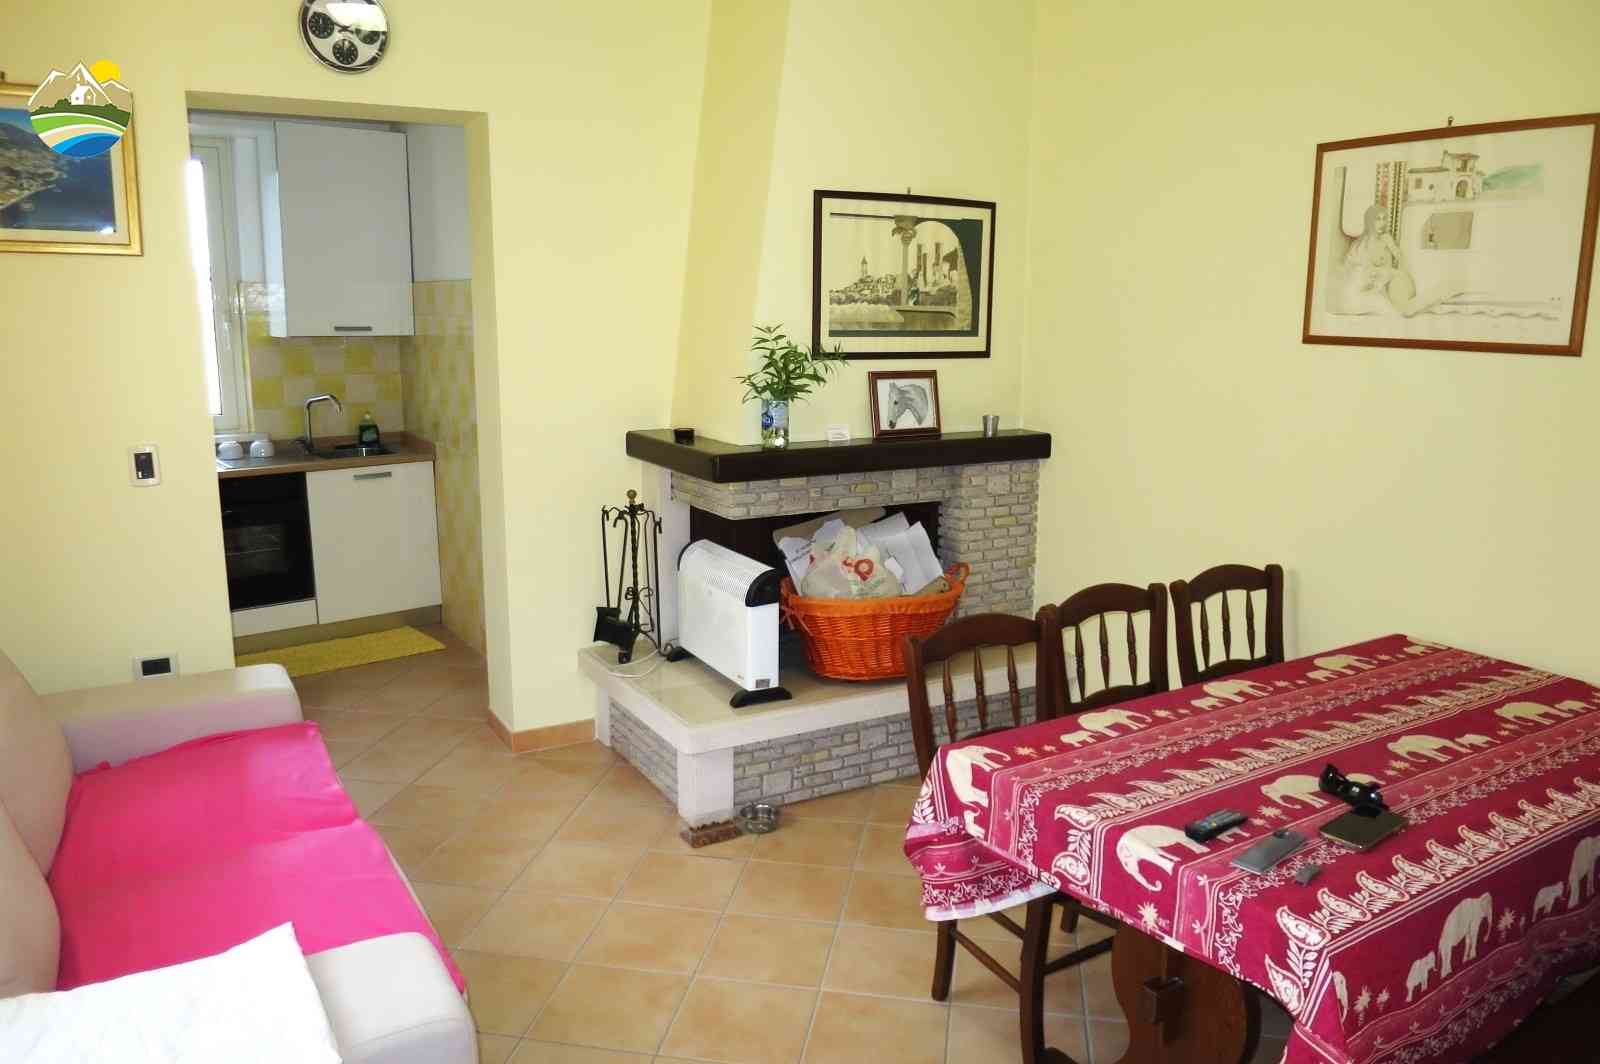 Casa in paese Casa in paese in vendita Picciano (PE), Casa Bomboniera - Picciano - EUR 48.860 10